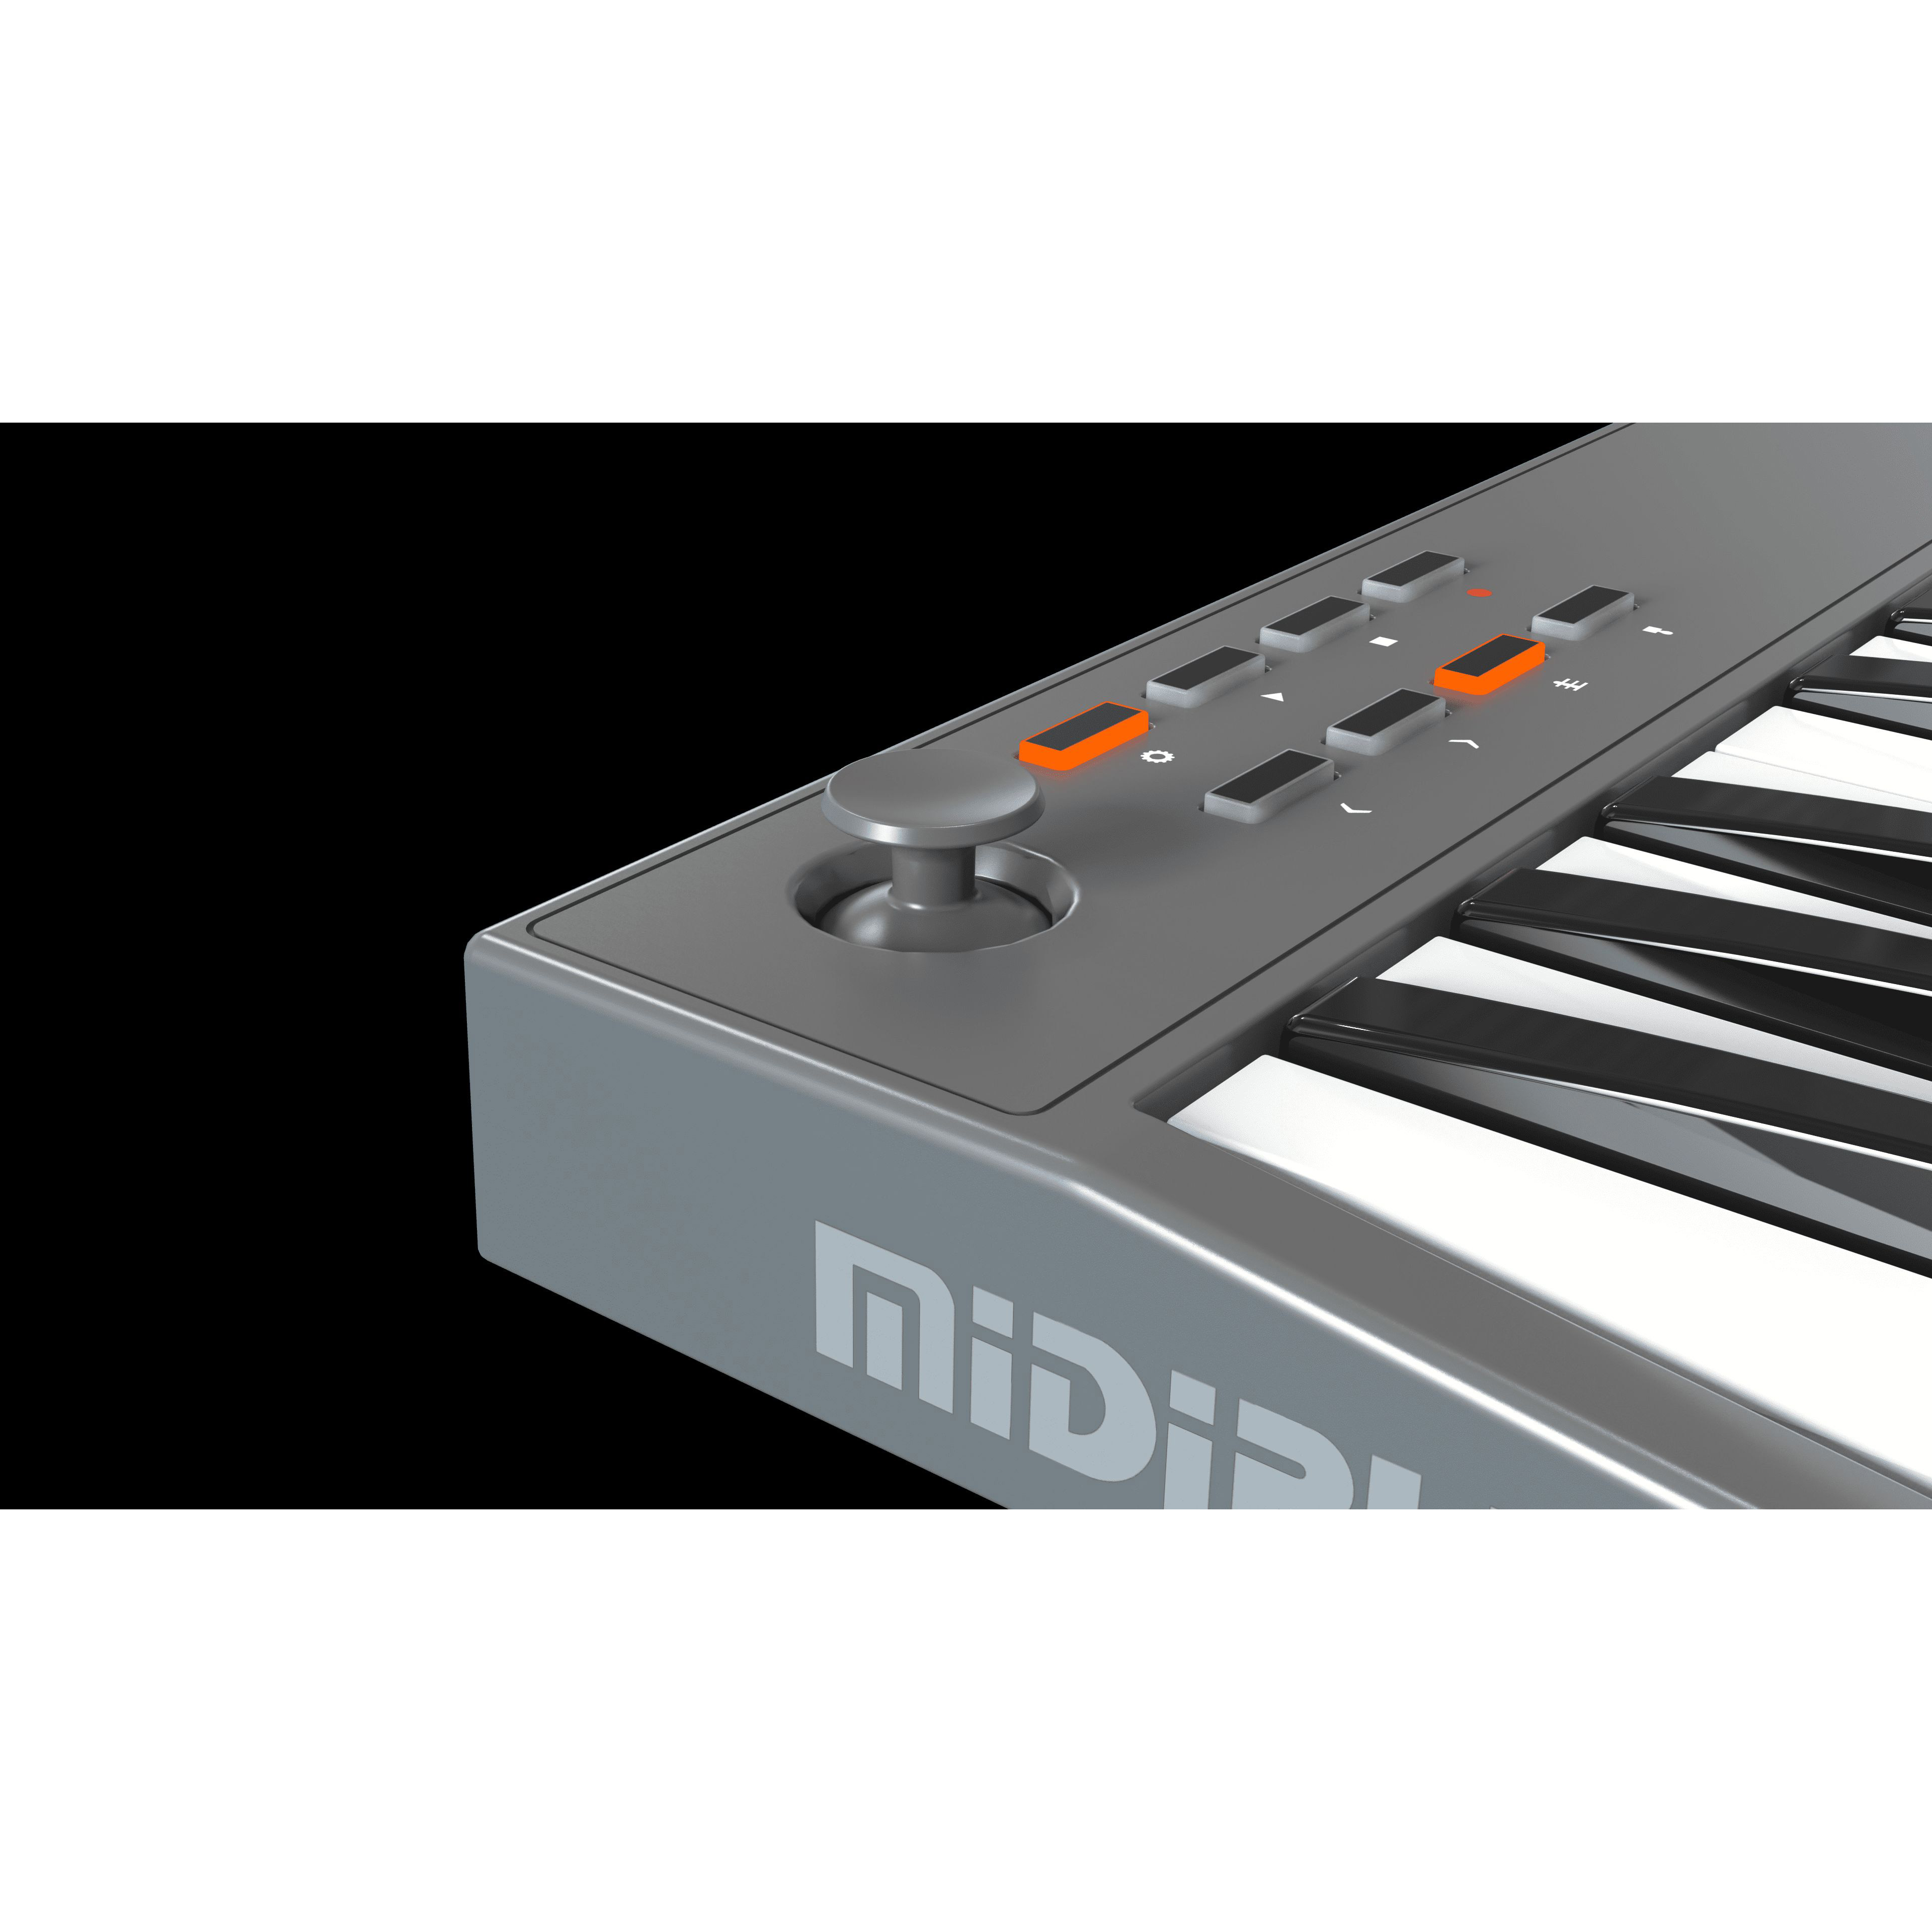 Midiplus TINY+ - миди-клавиатура 32 клавиши с 4 пэдами и 4 регуляторами Миди-клавиатуры